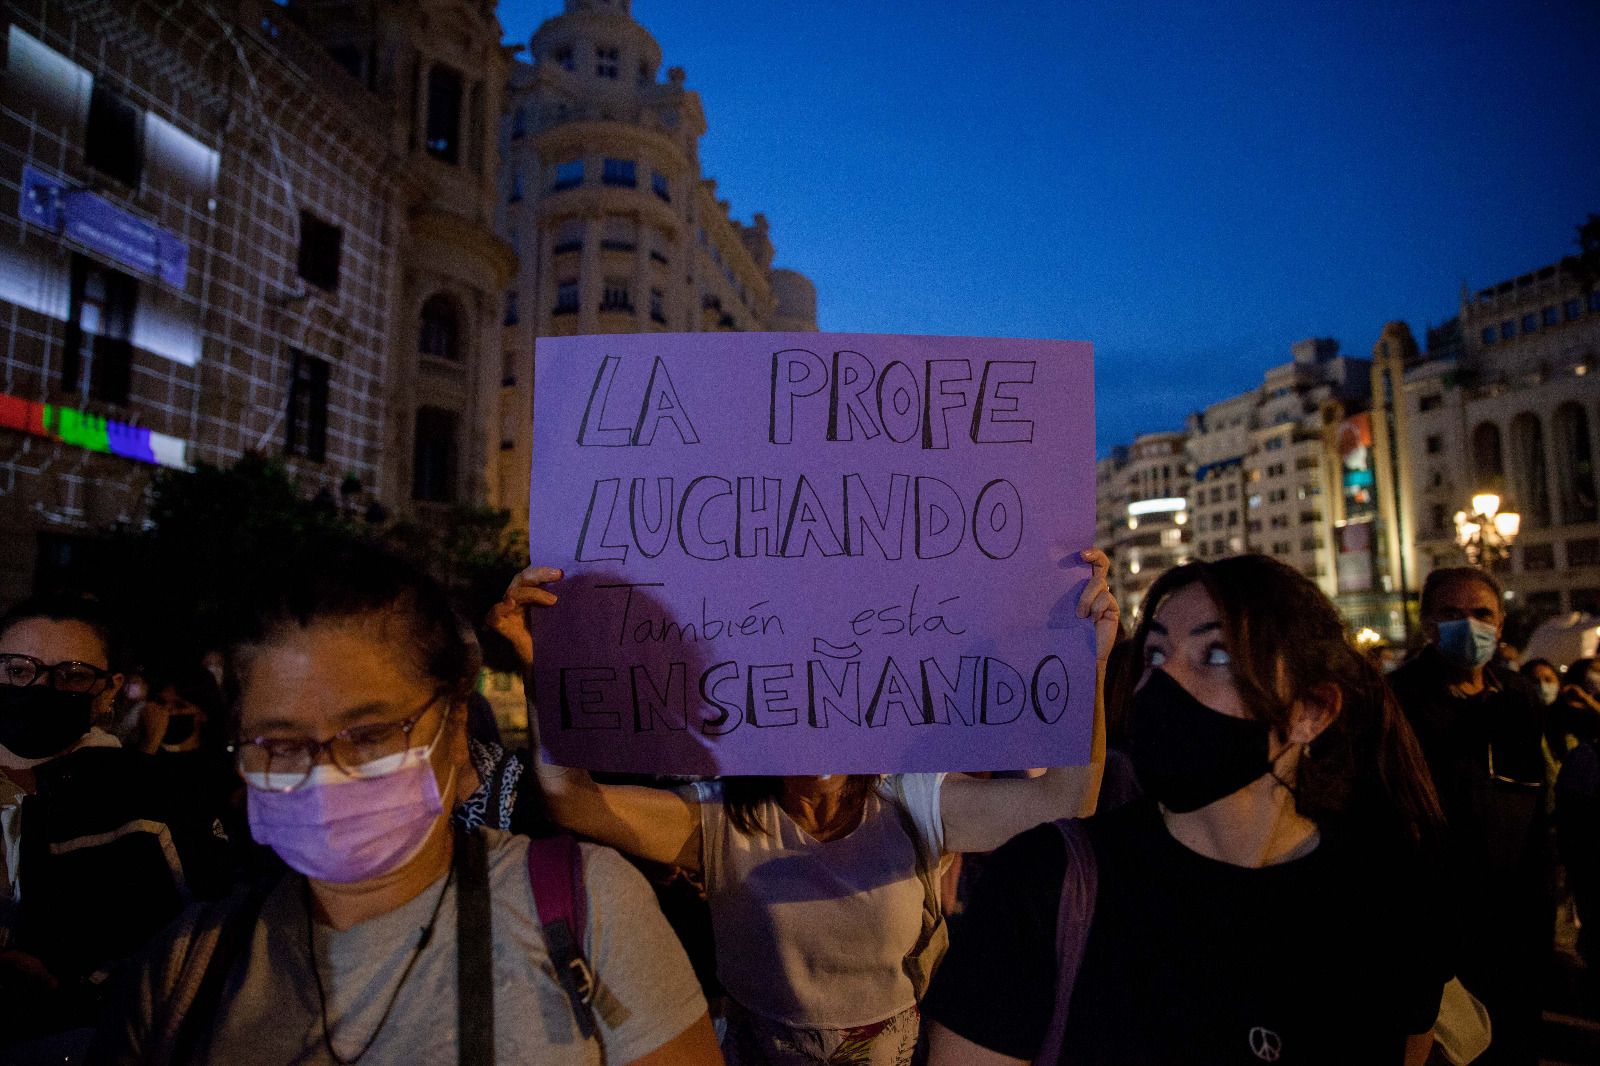 Protesta en València contra la violencia machista